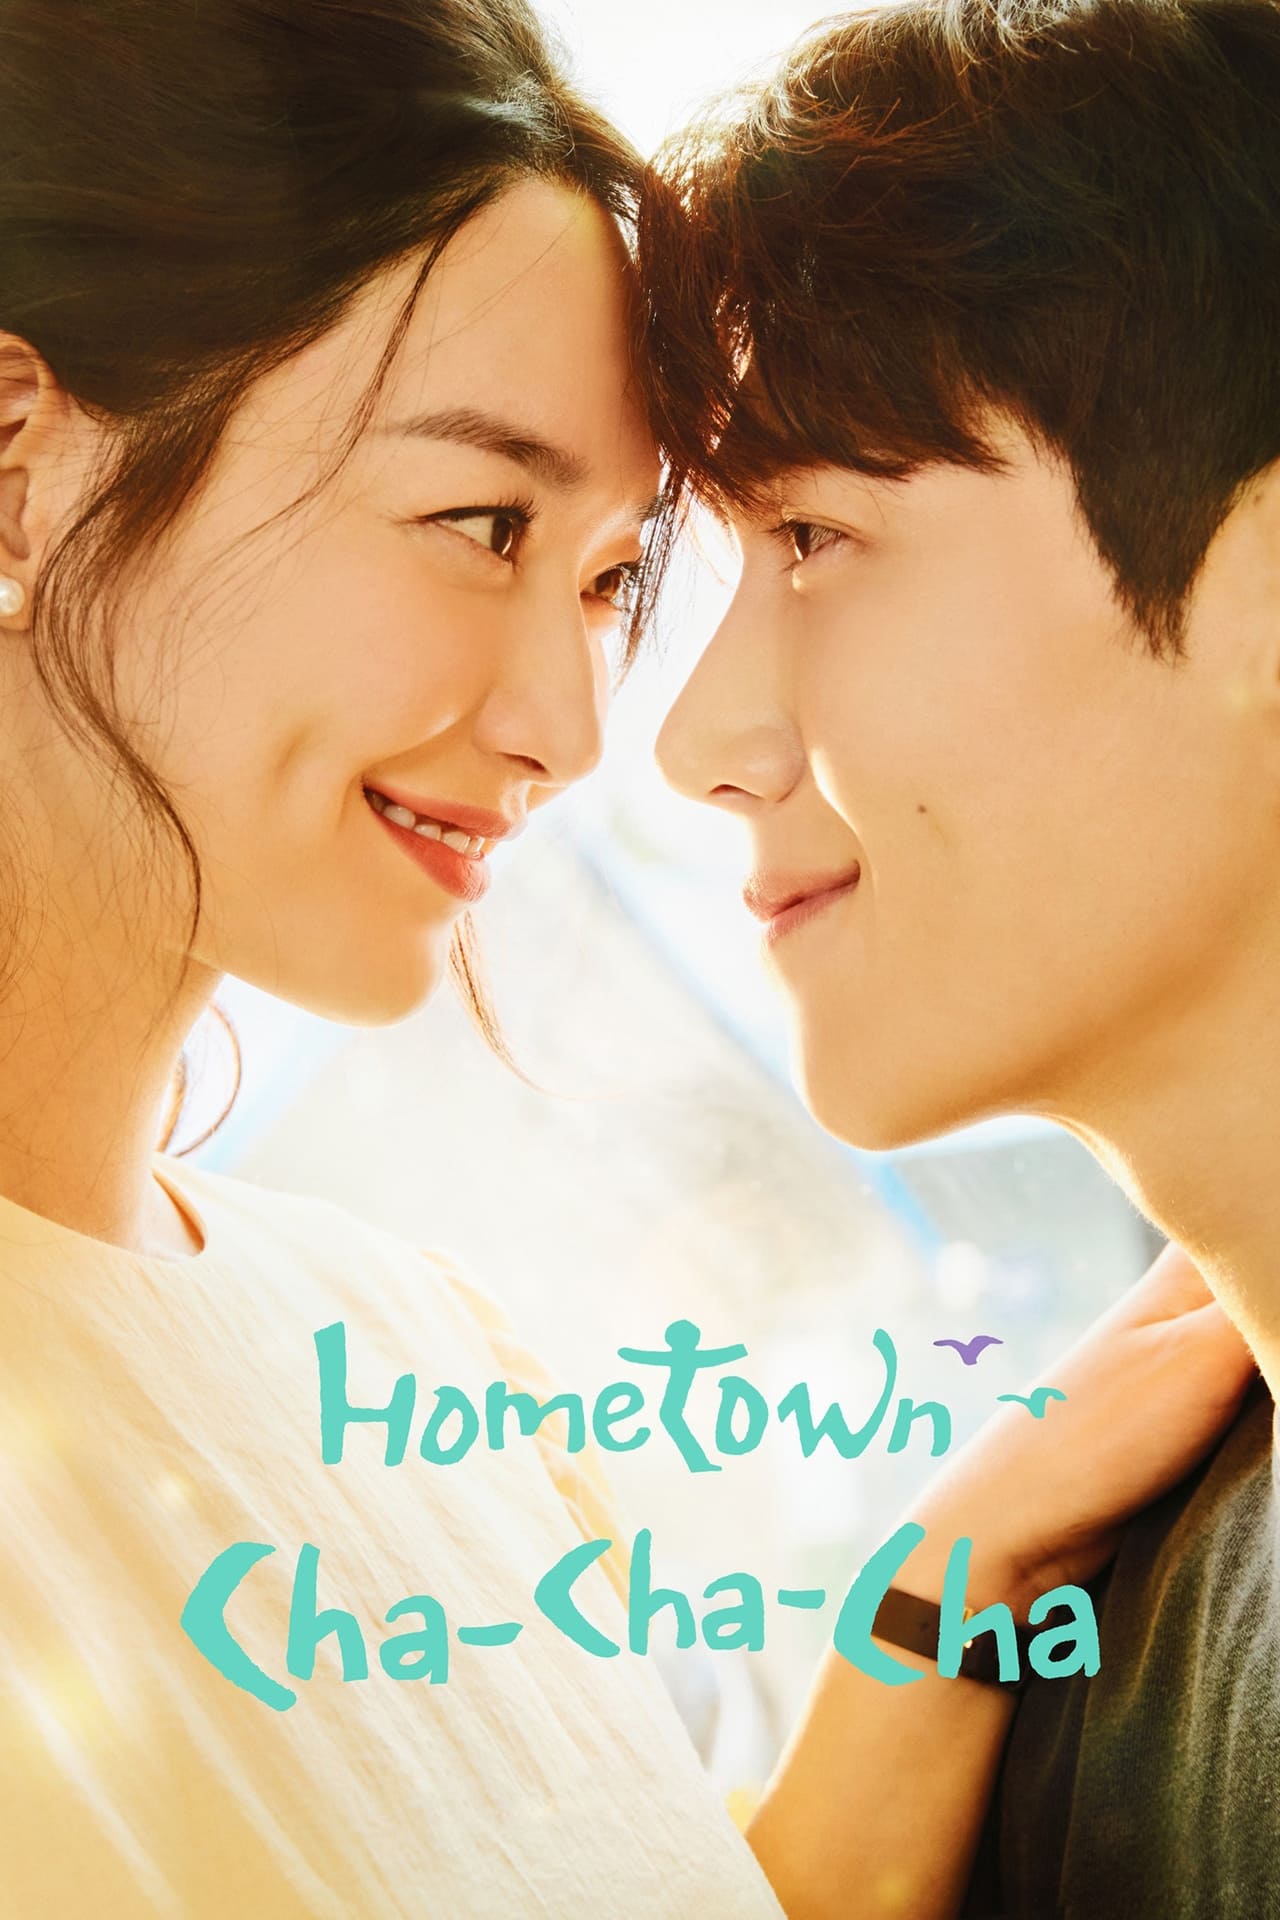 Hometown Cha-Cha-Cha (season 1)